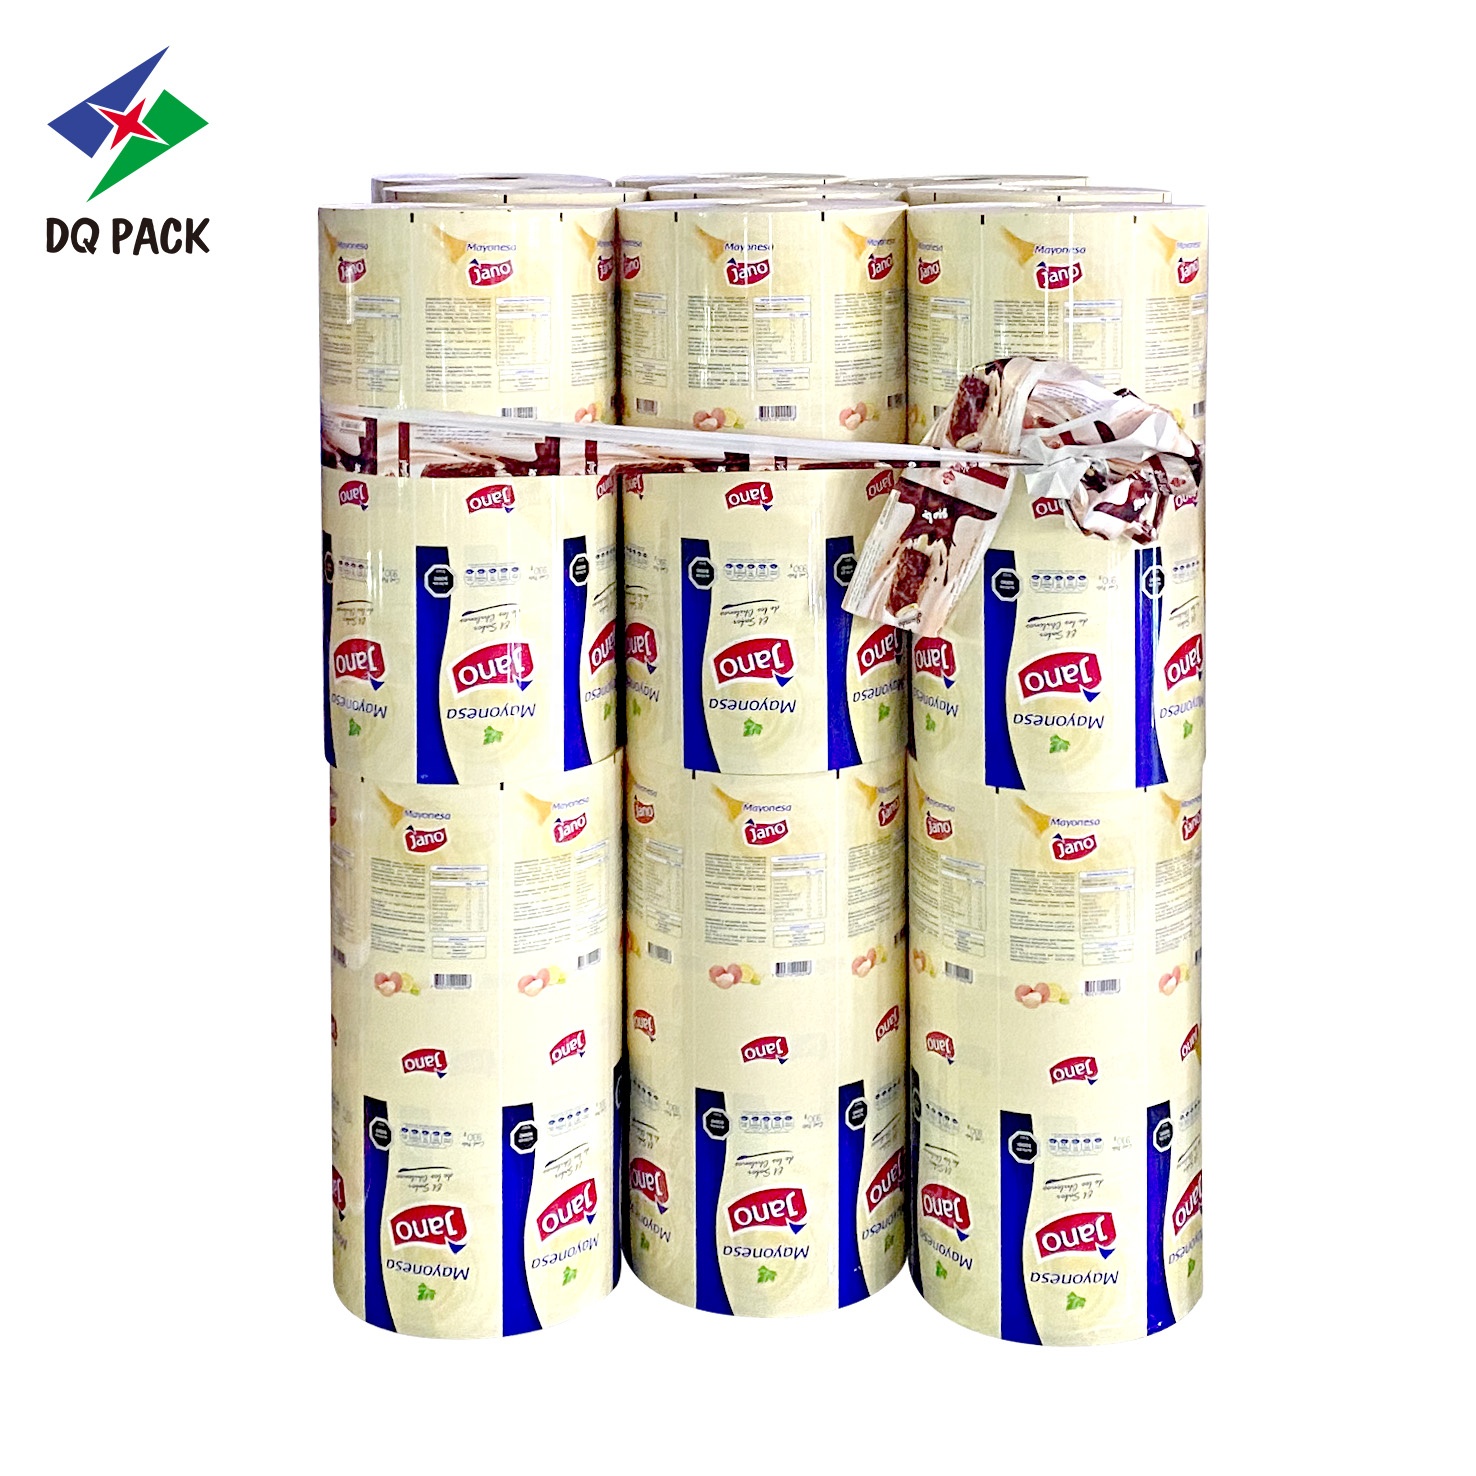 DQ PACK Custom Printed 200g Roll Stock Aluminium Foil Plastic Snack Sachet Wrapper Packaging Roll Film